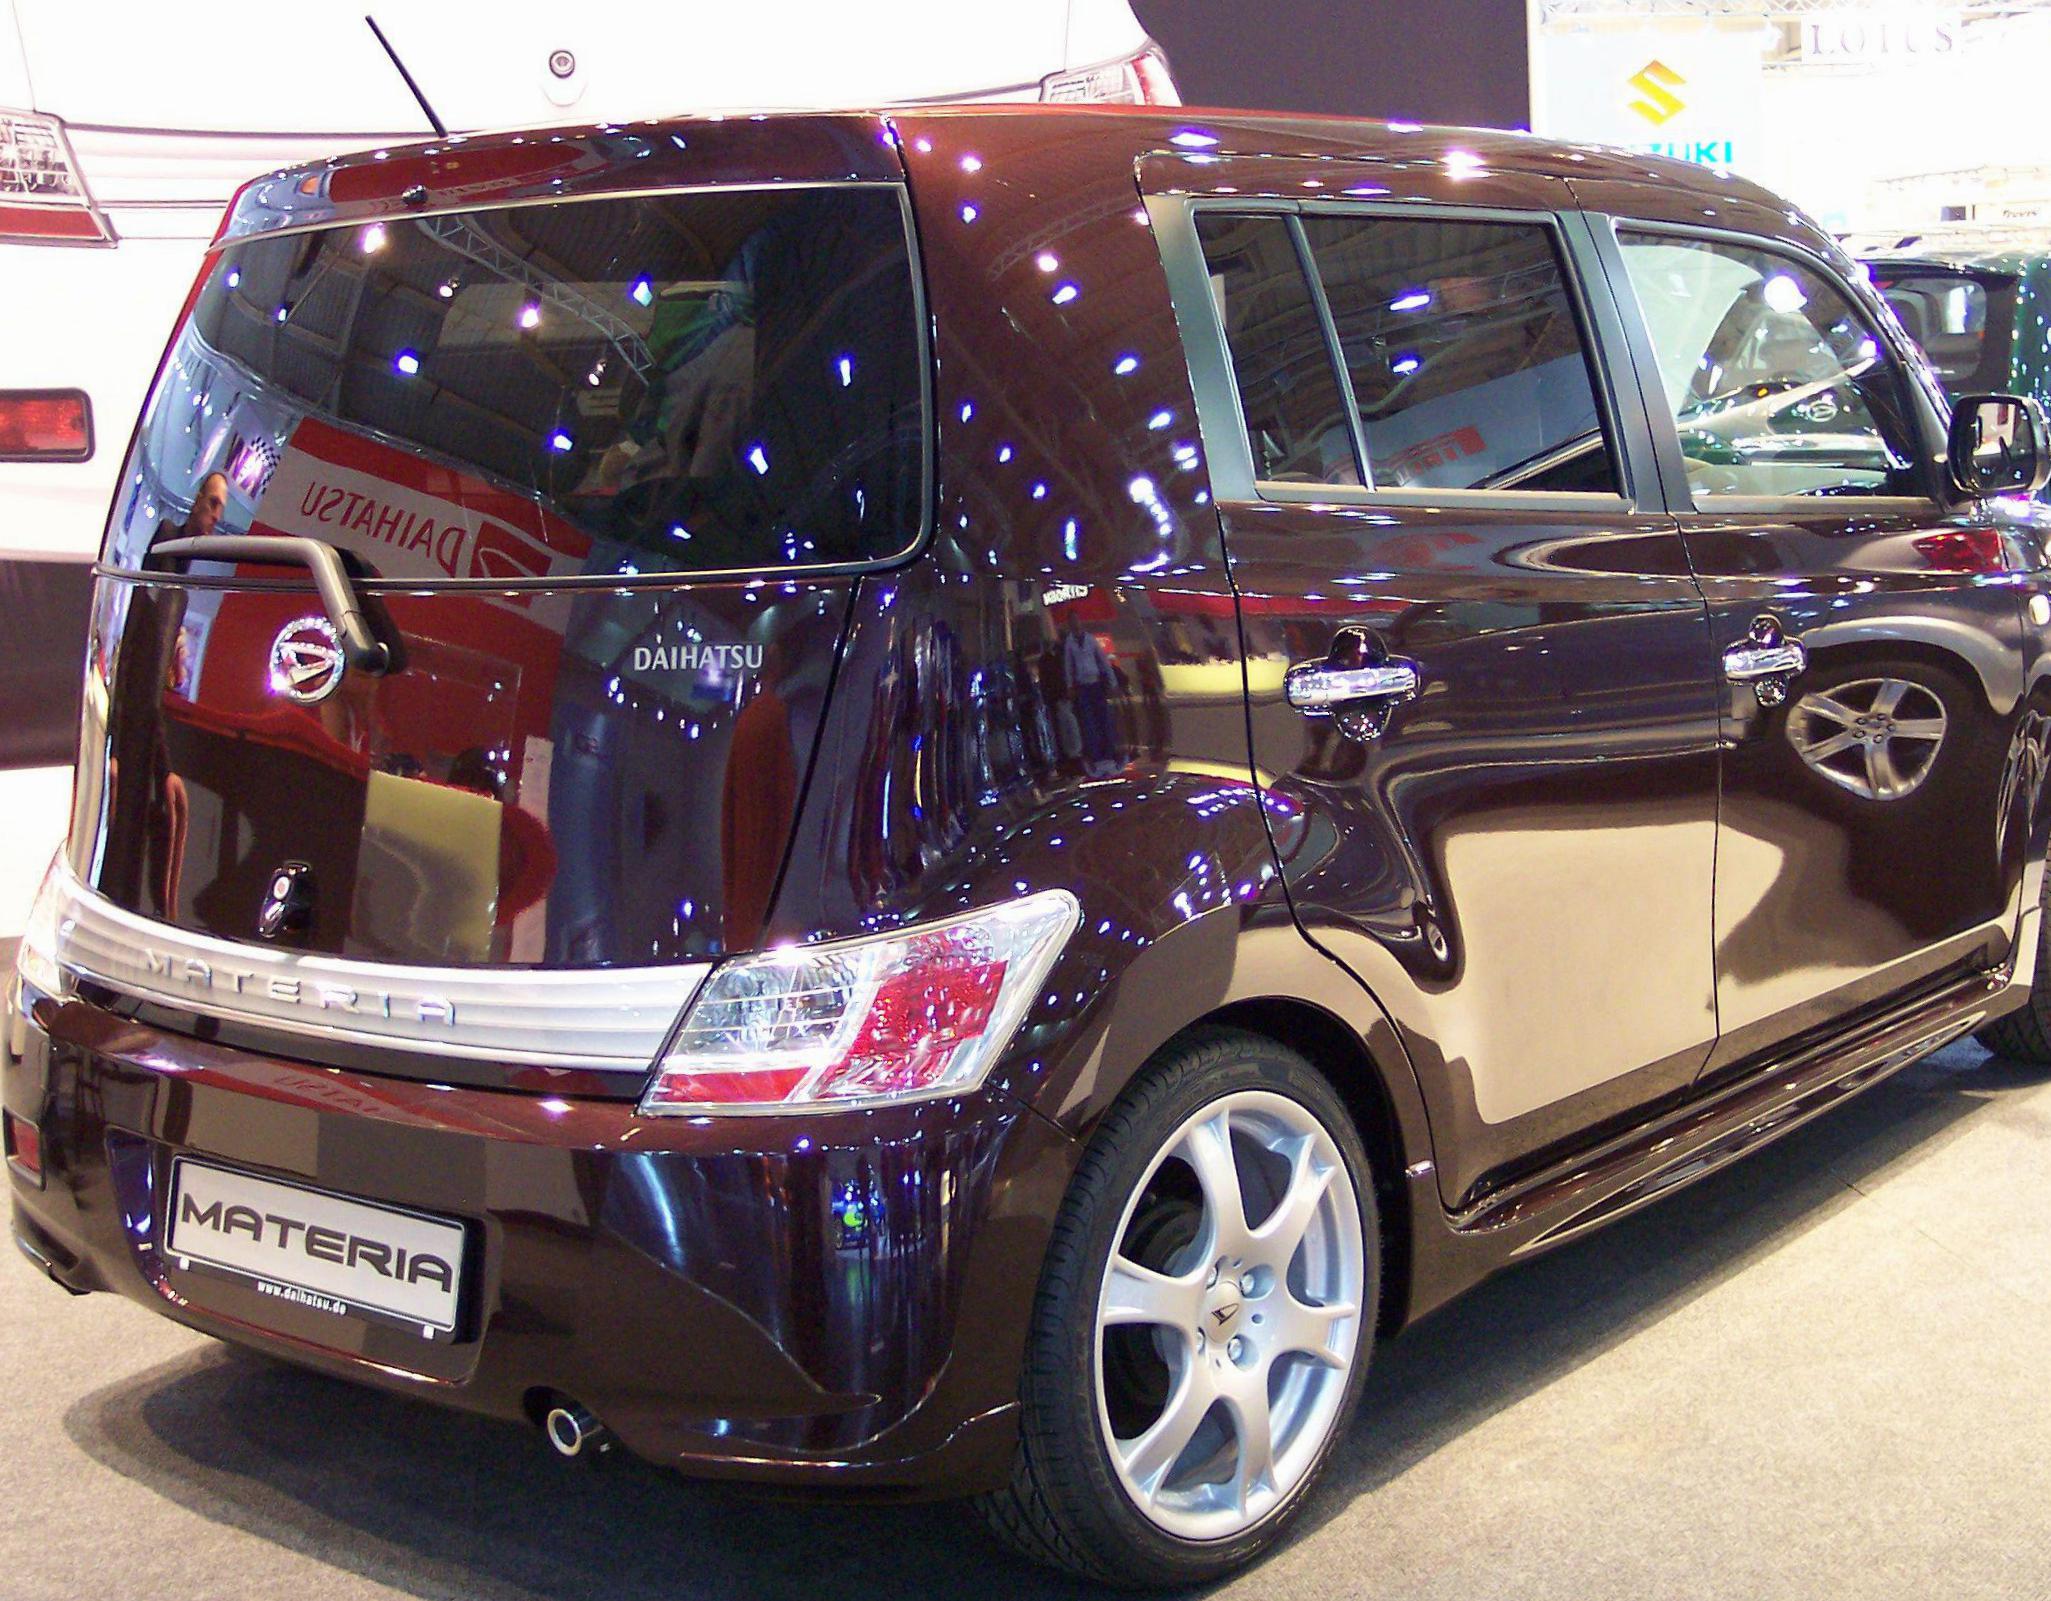 Materia Daihatsu tuning 2008